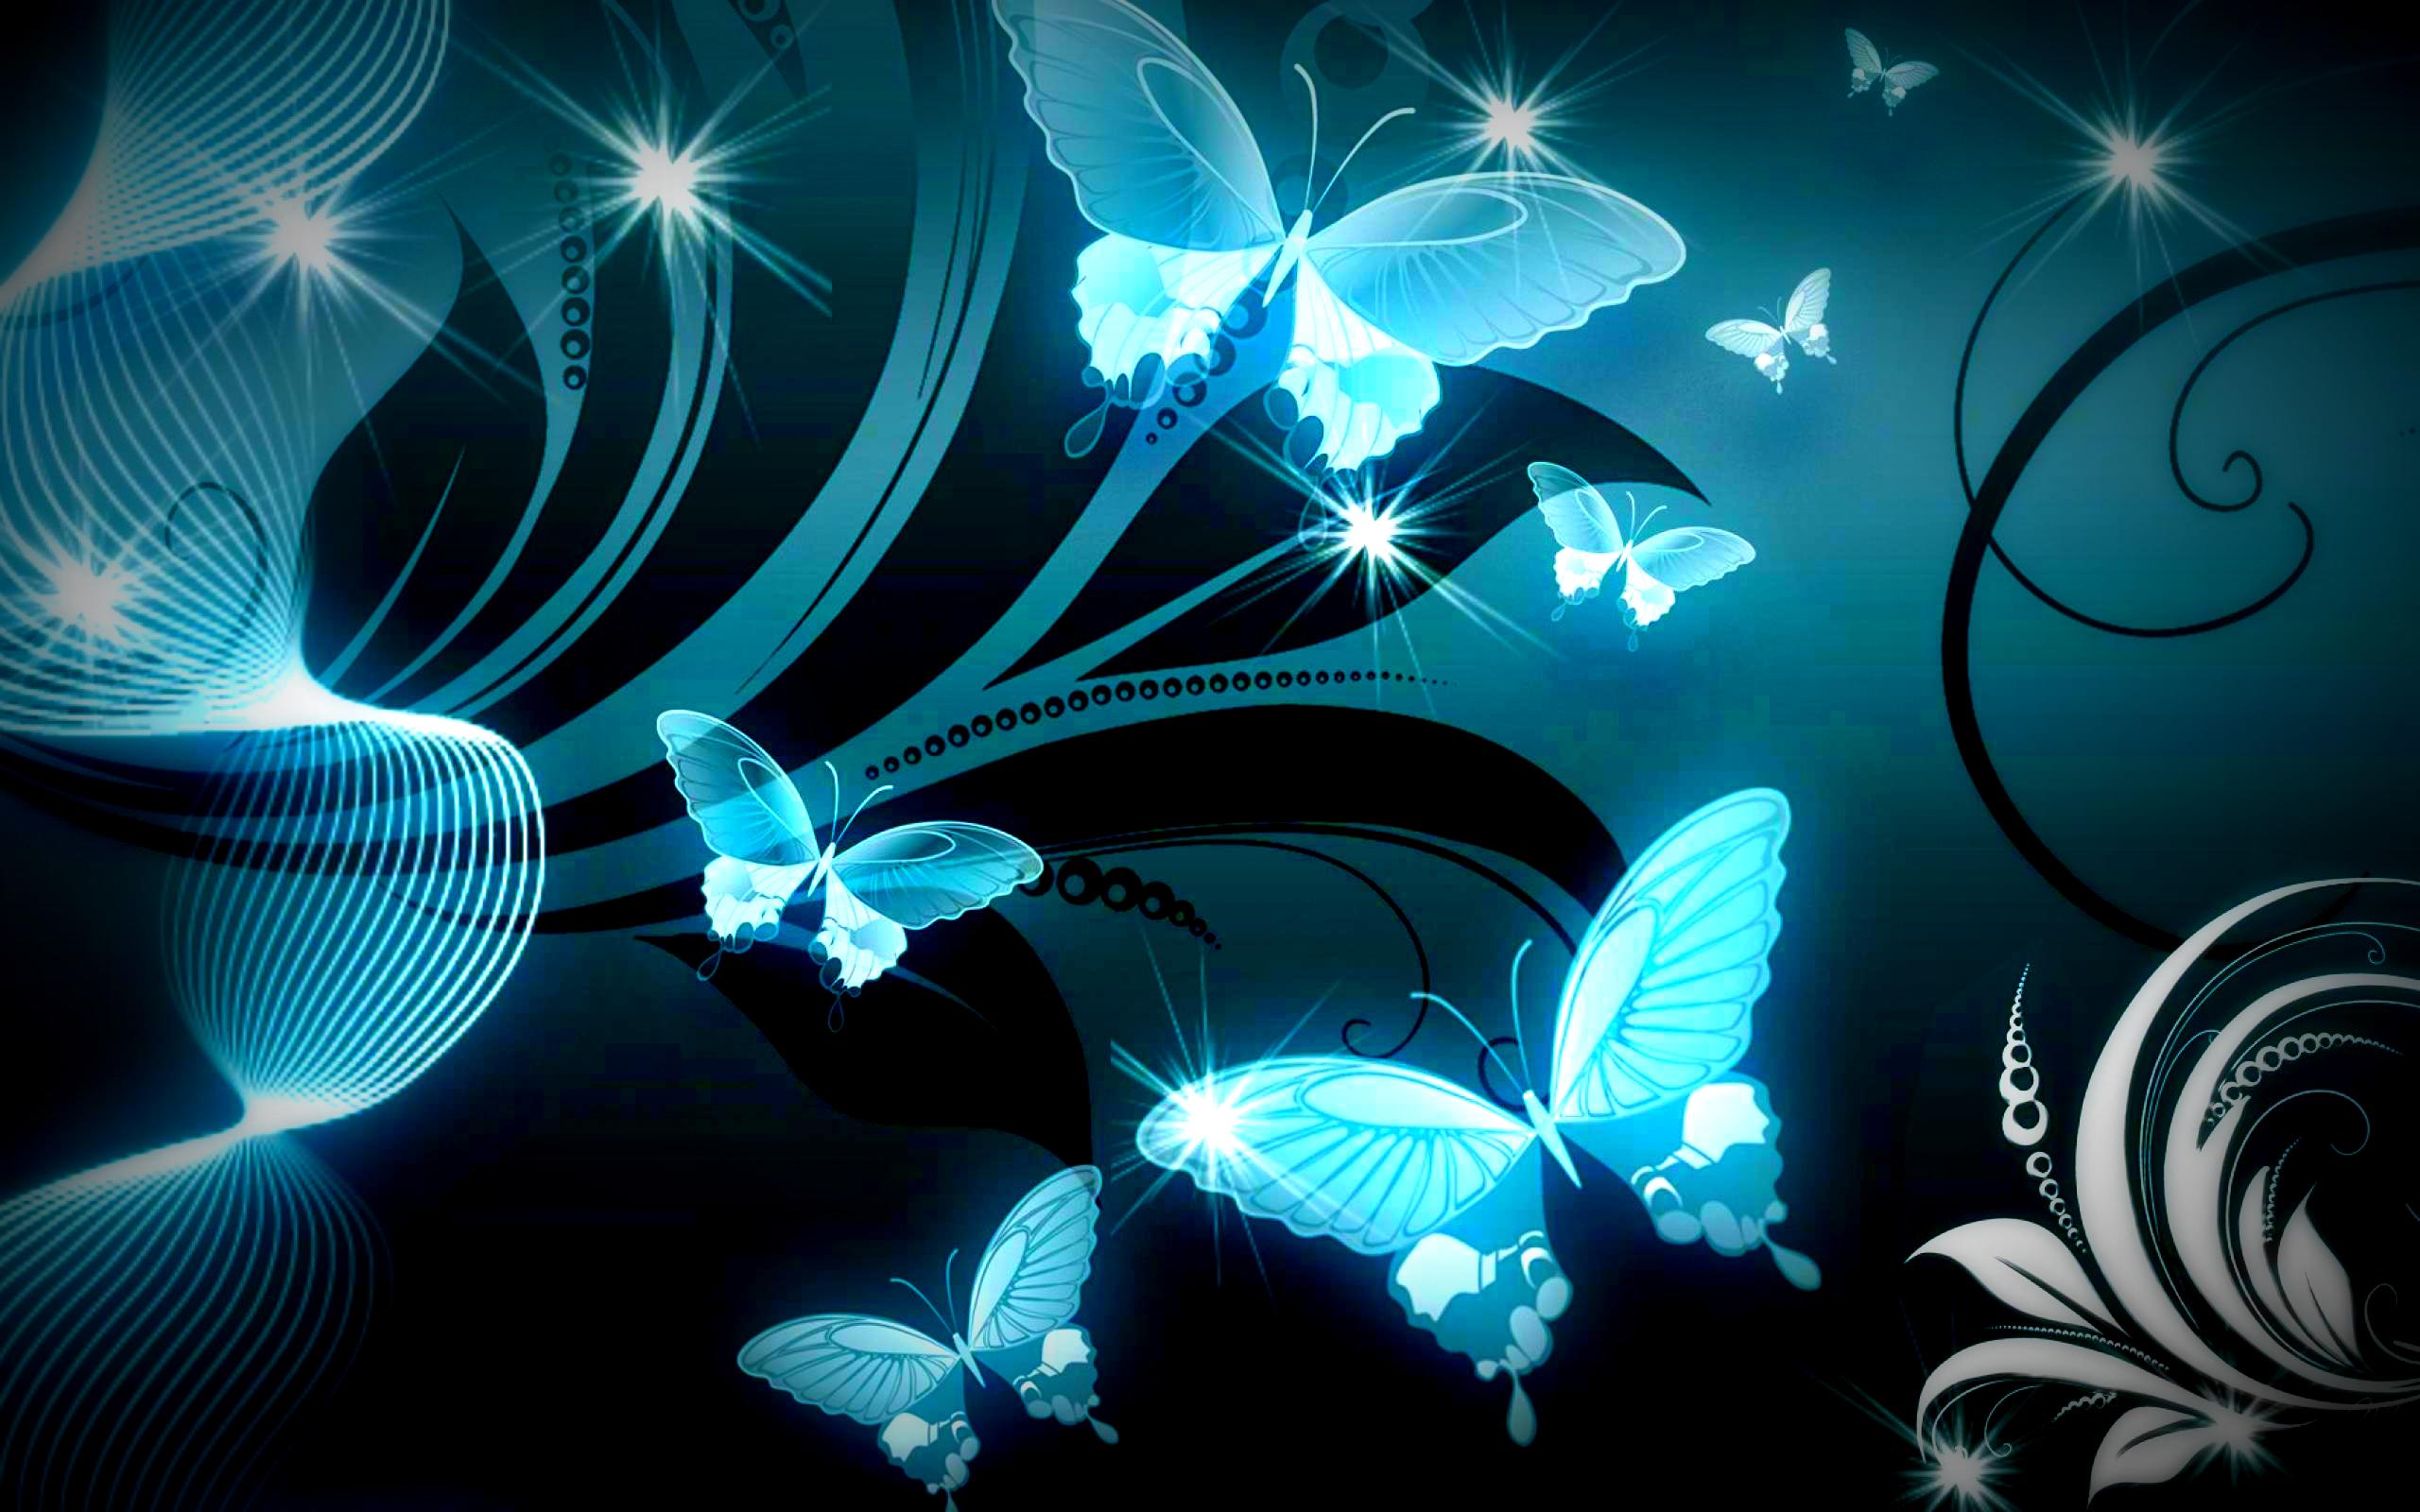 Butterfly Backgrounds free download | PixelsTalk.Net